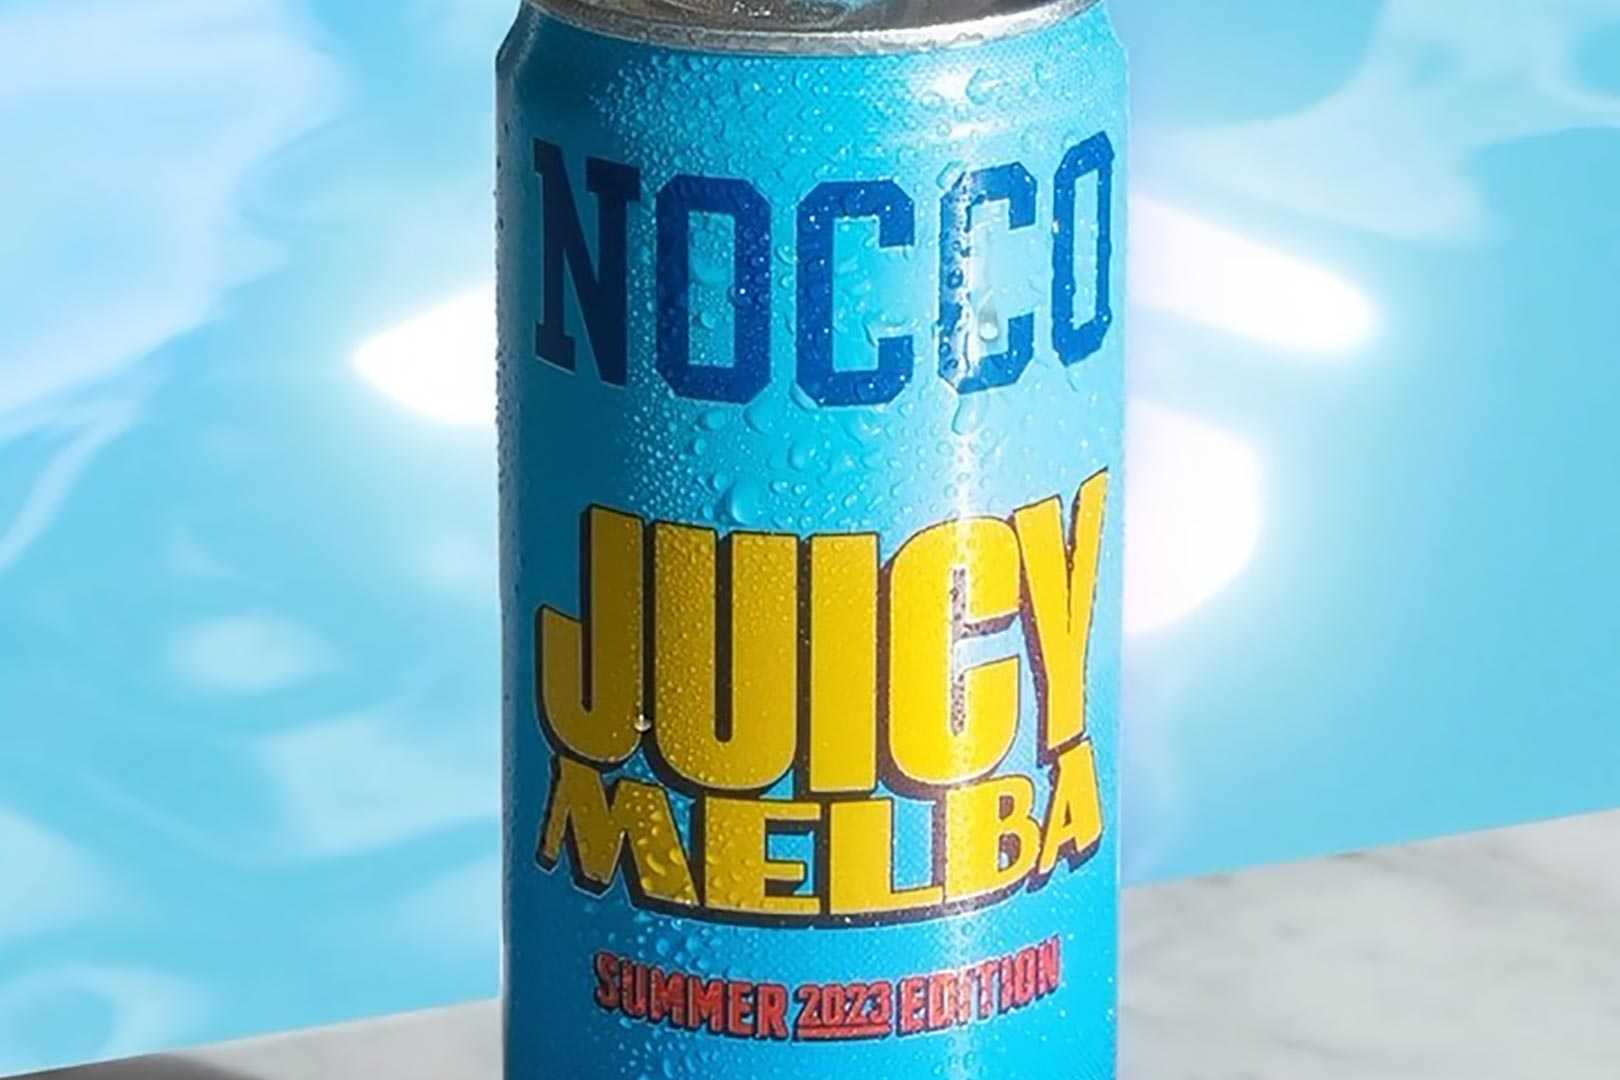 Juicy Melba Nocco Energy Drink